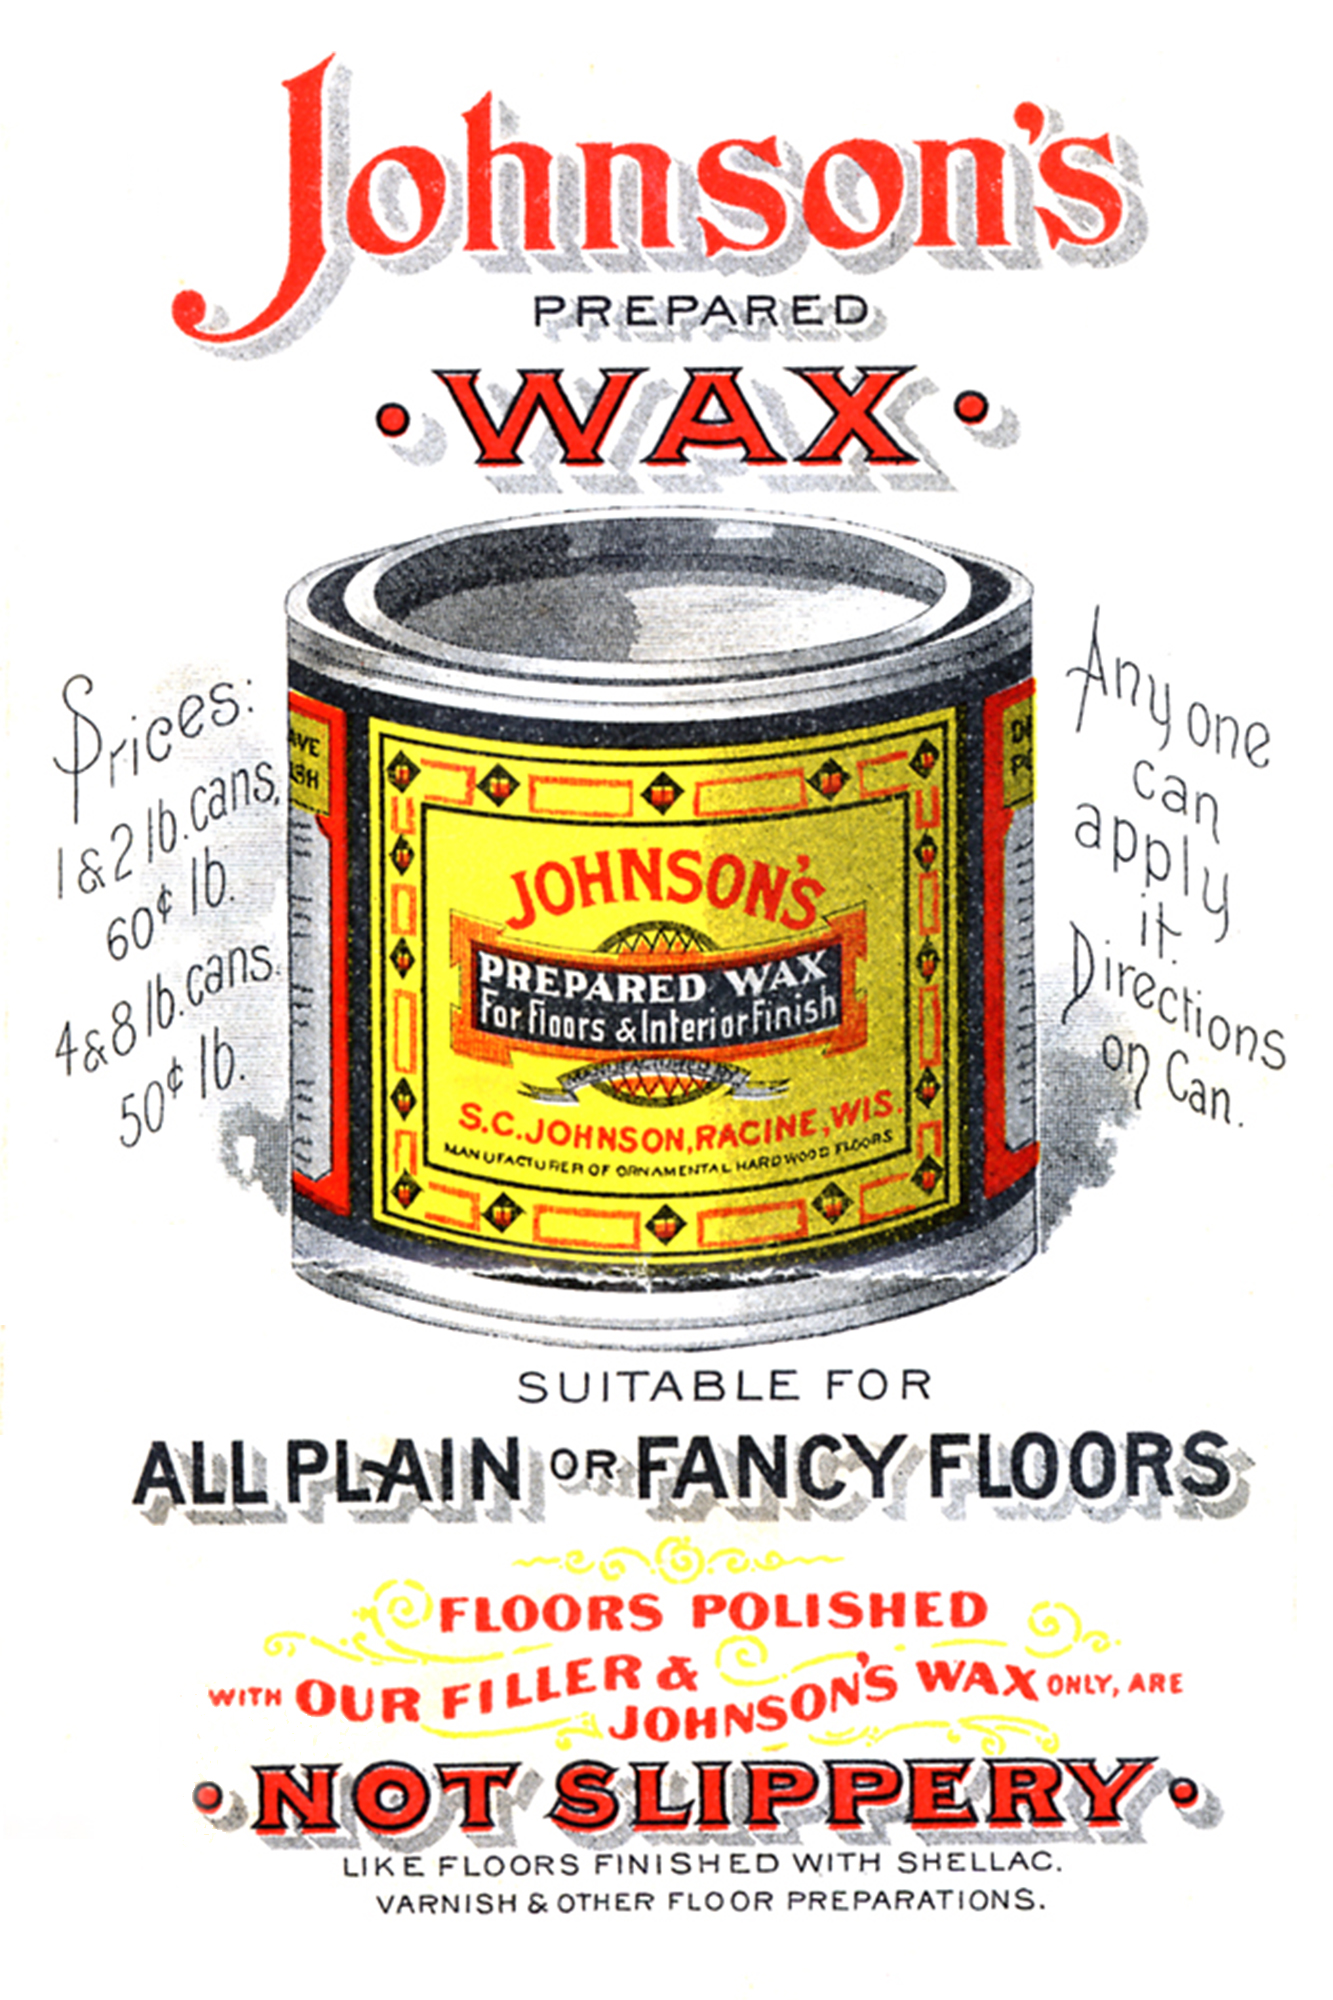 Annonce rétro de la cire préparée Johnson’s Wax de 1898